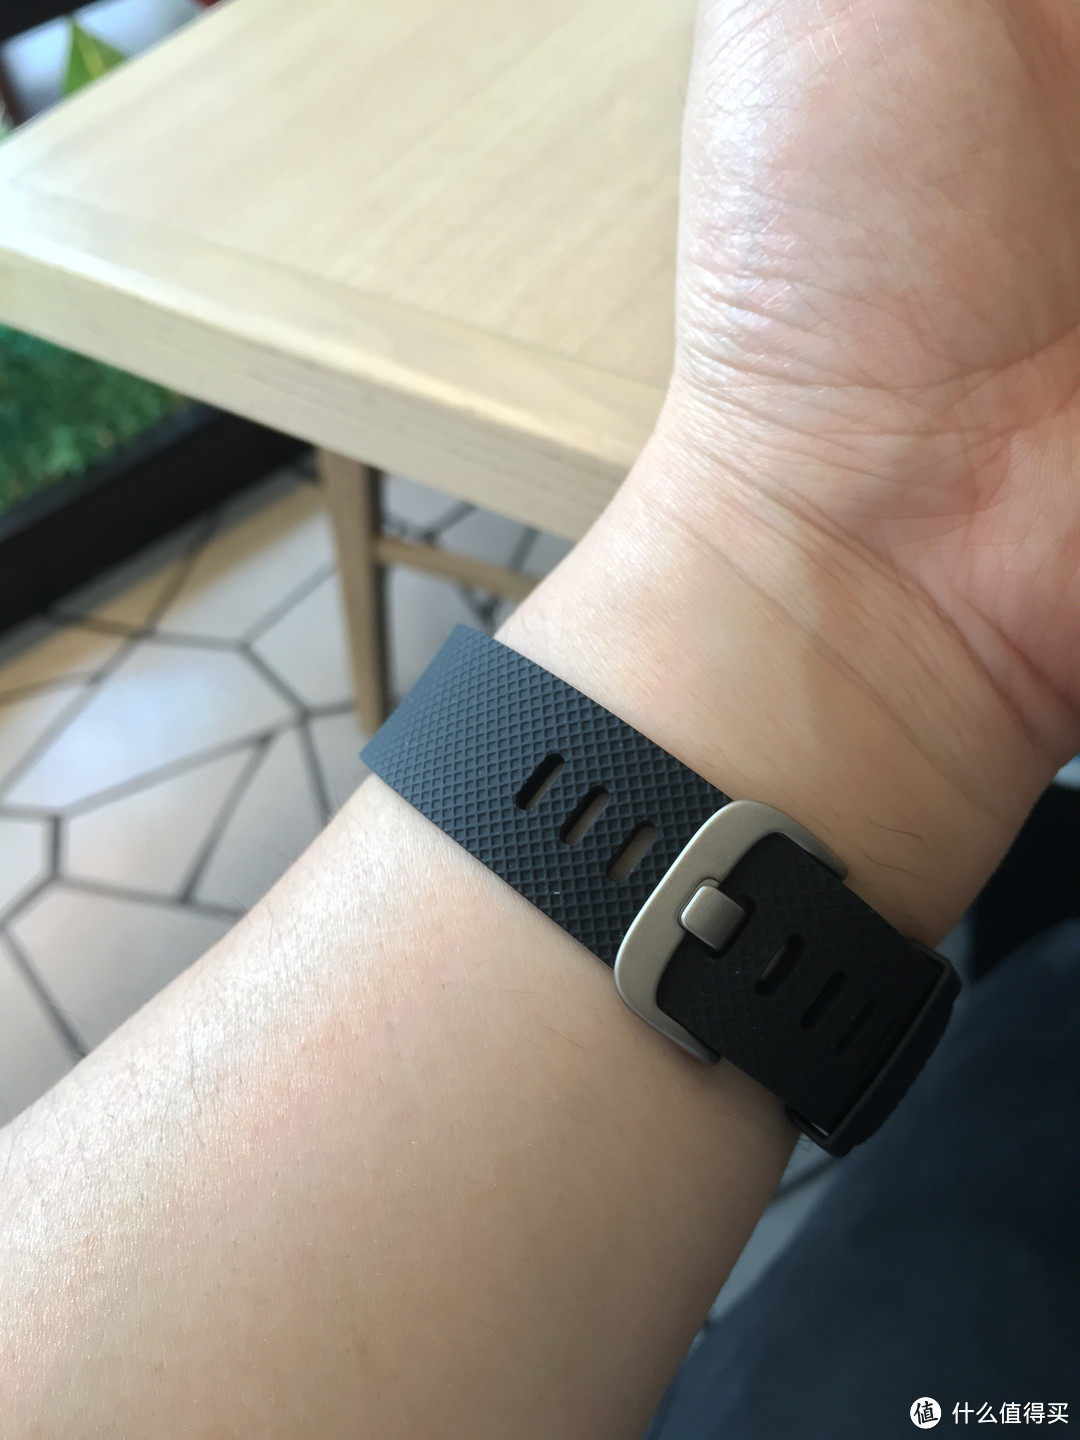 我的Fitbit HR 智能手环 开箱及使用感受